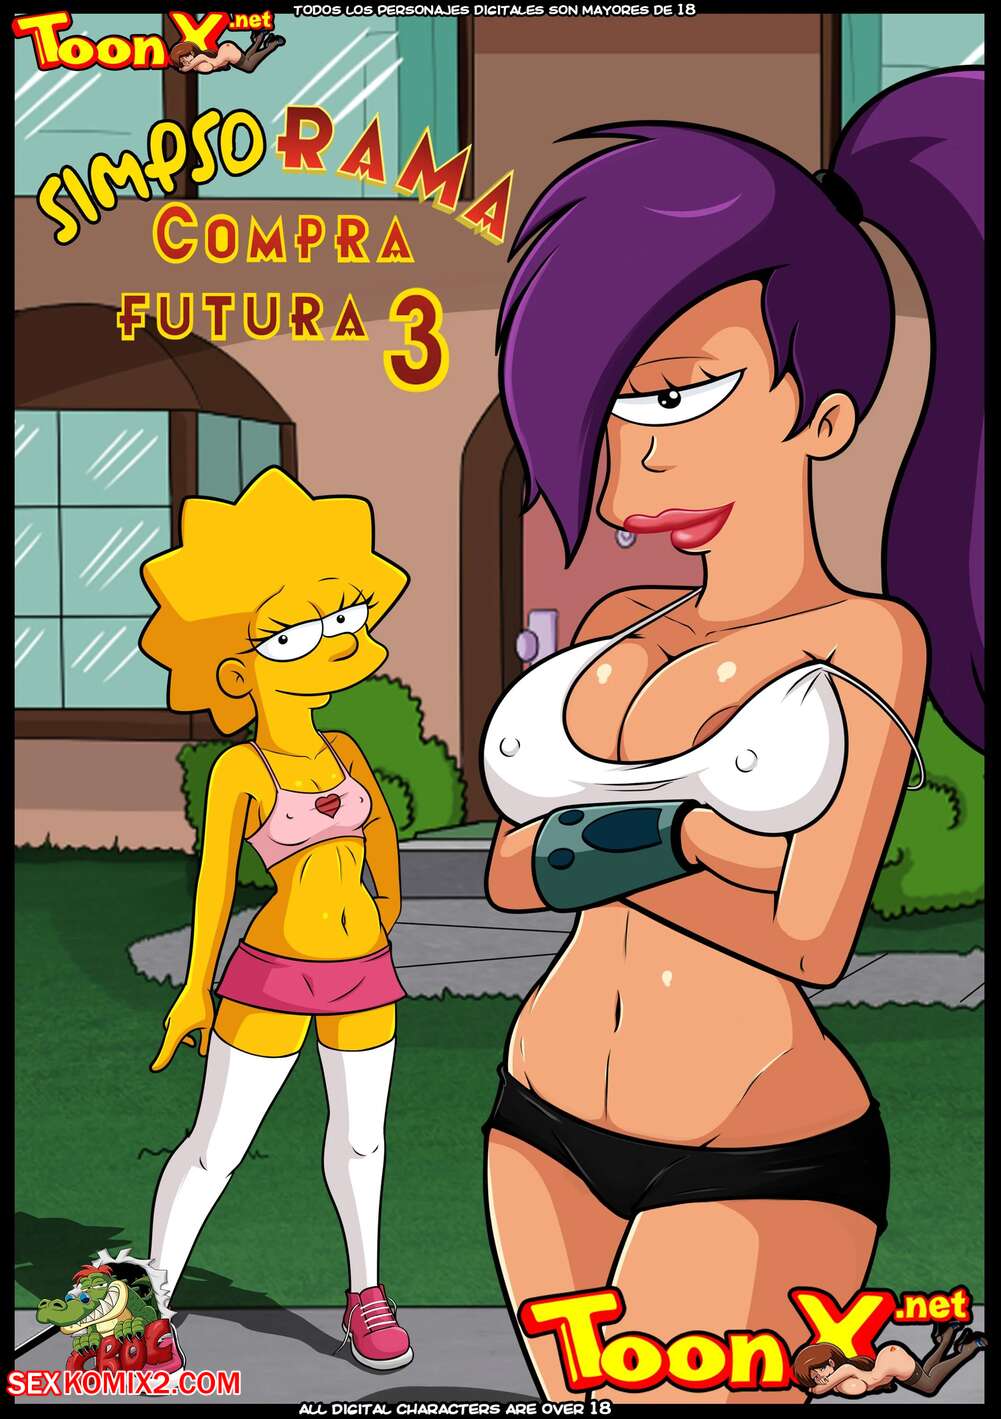 3 3 - âœ…ï¸ Porn comic SimpsoRama. Chapter 3. The Simpsons , Futurama. Croc. Sex  comic beauty woke up | Porn comics in English for adults only |  sexkomix2.com